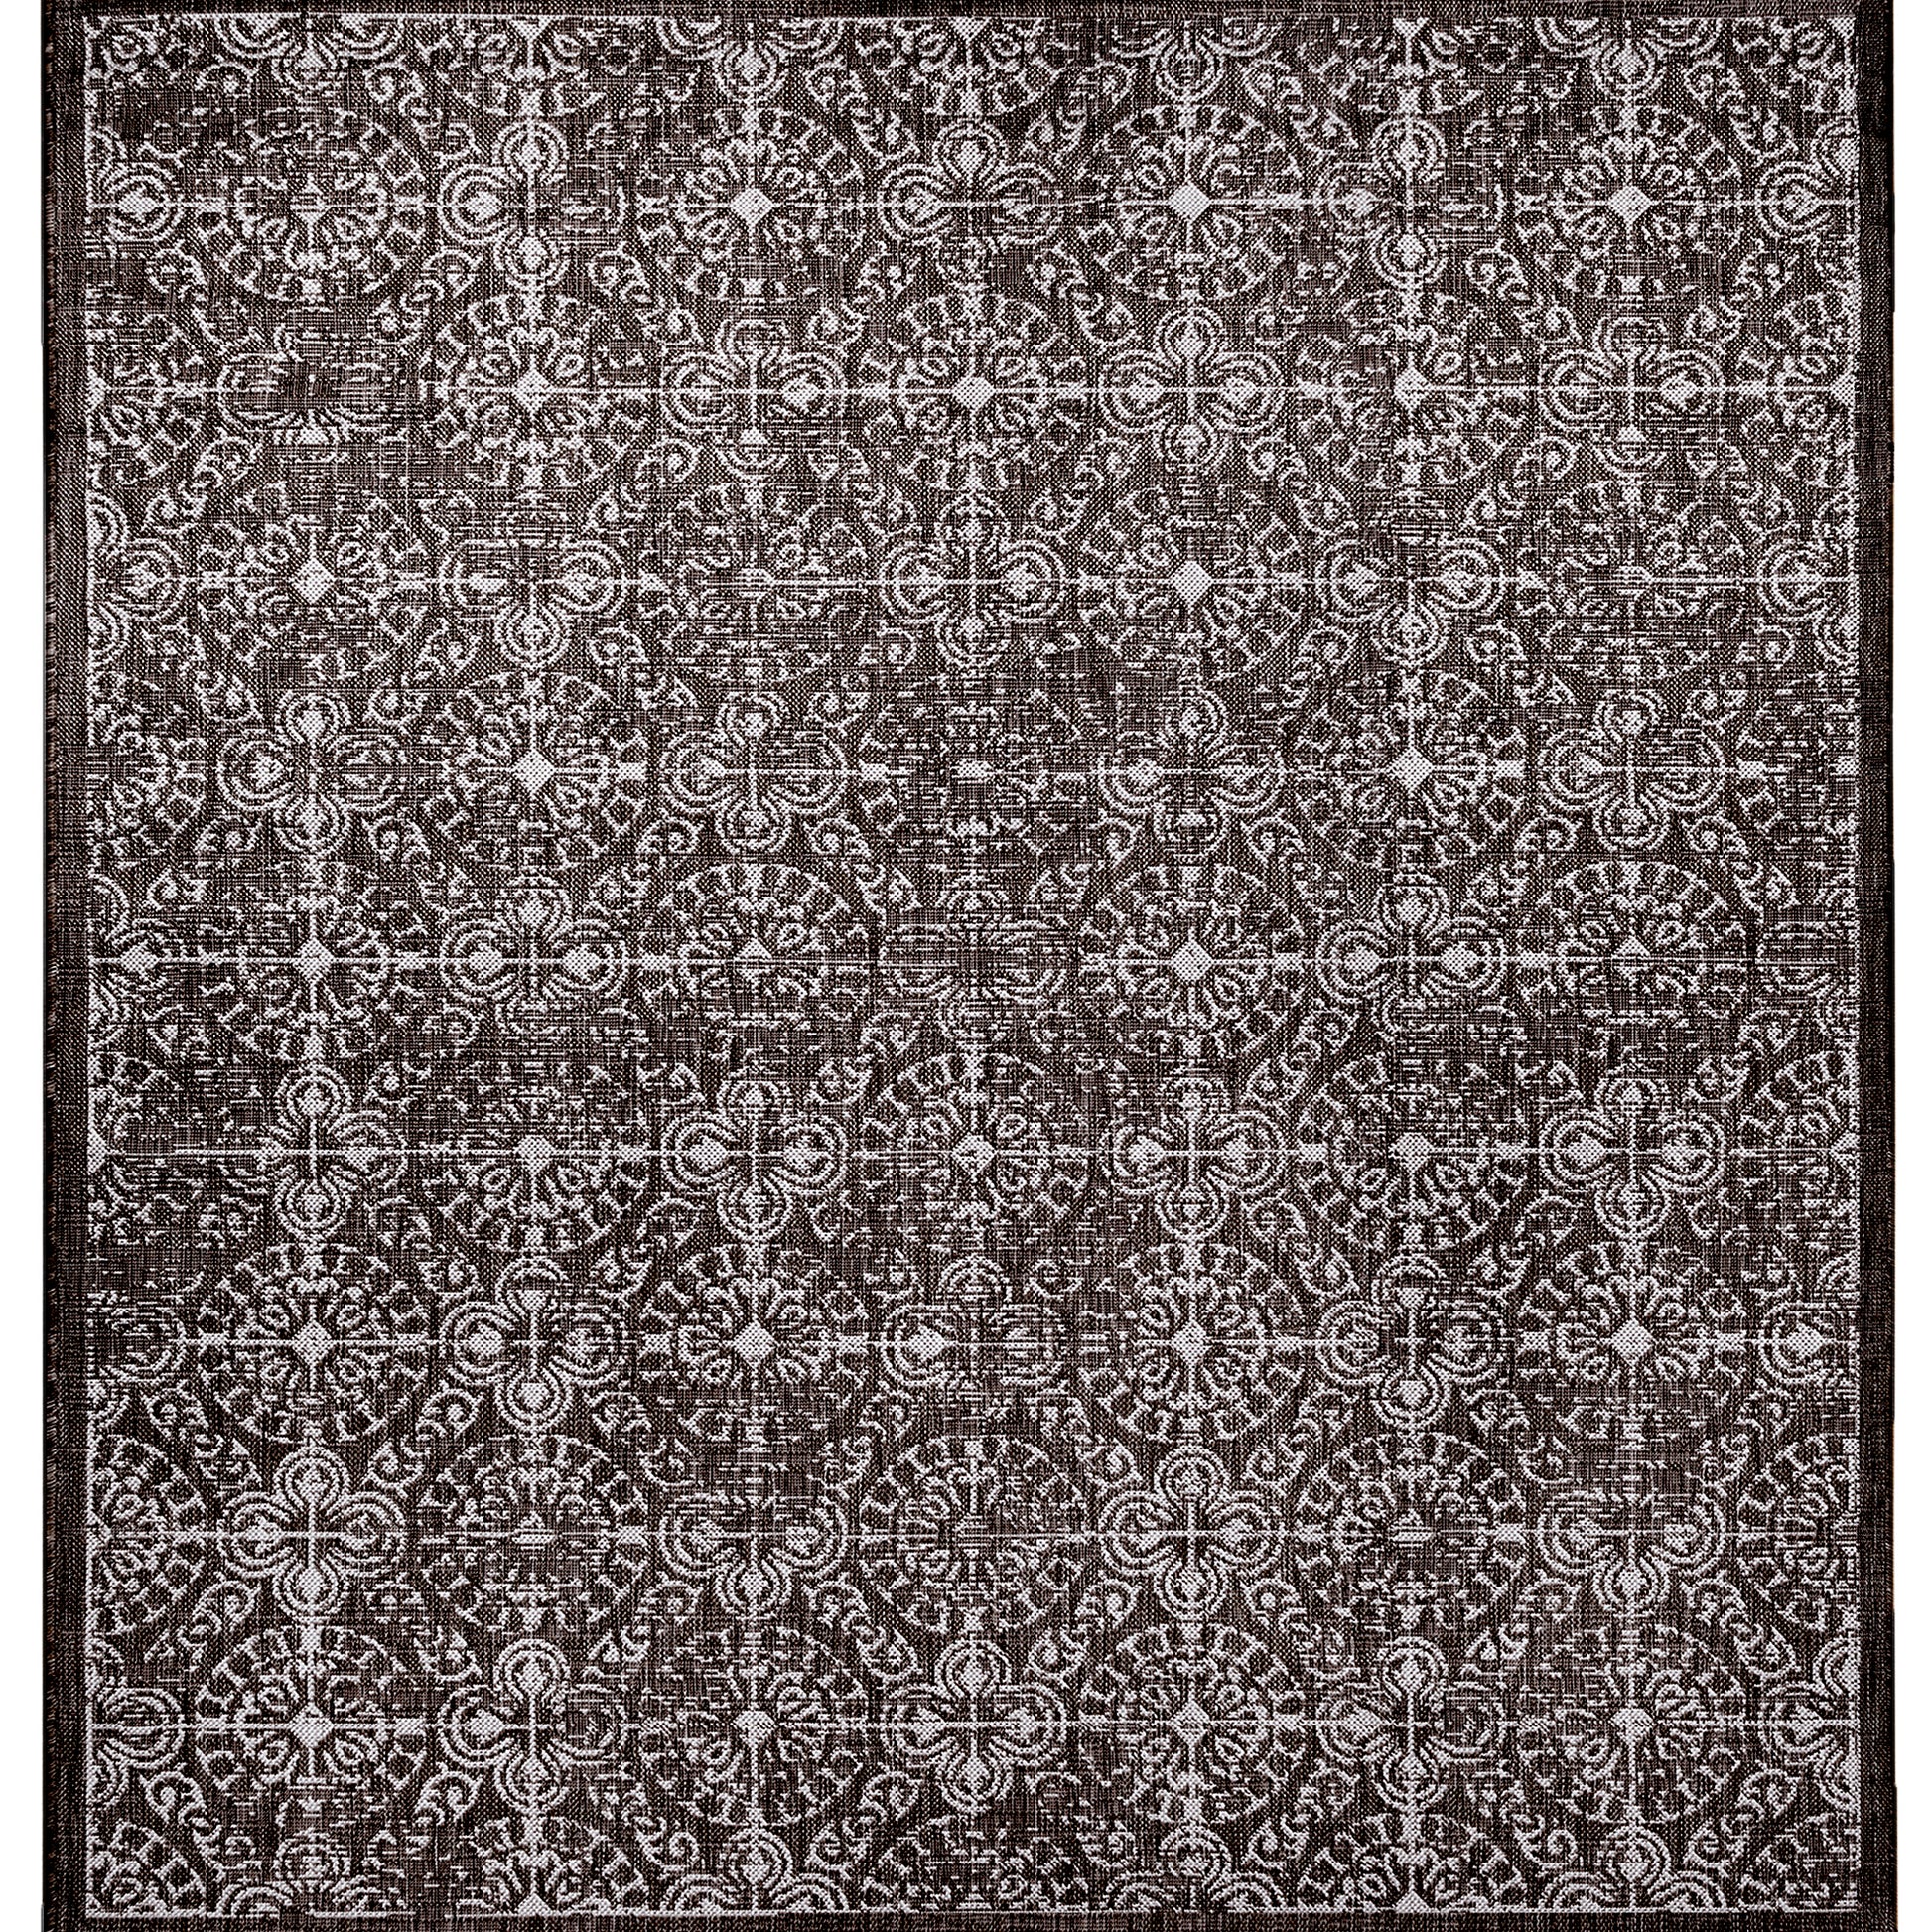 Liora Manne Carmel Antique Tile 8476/48 Black Area Rug